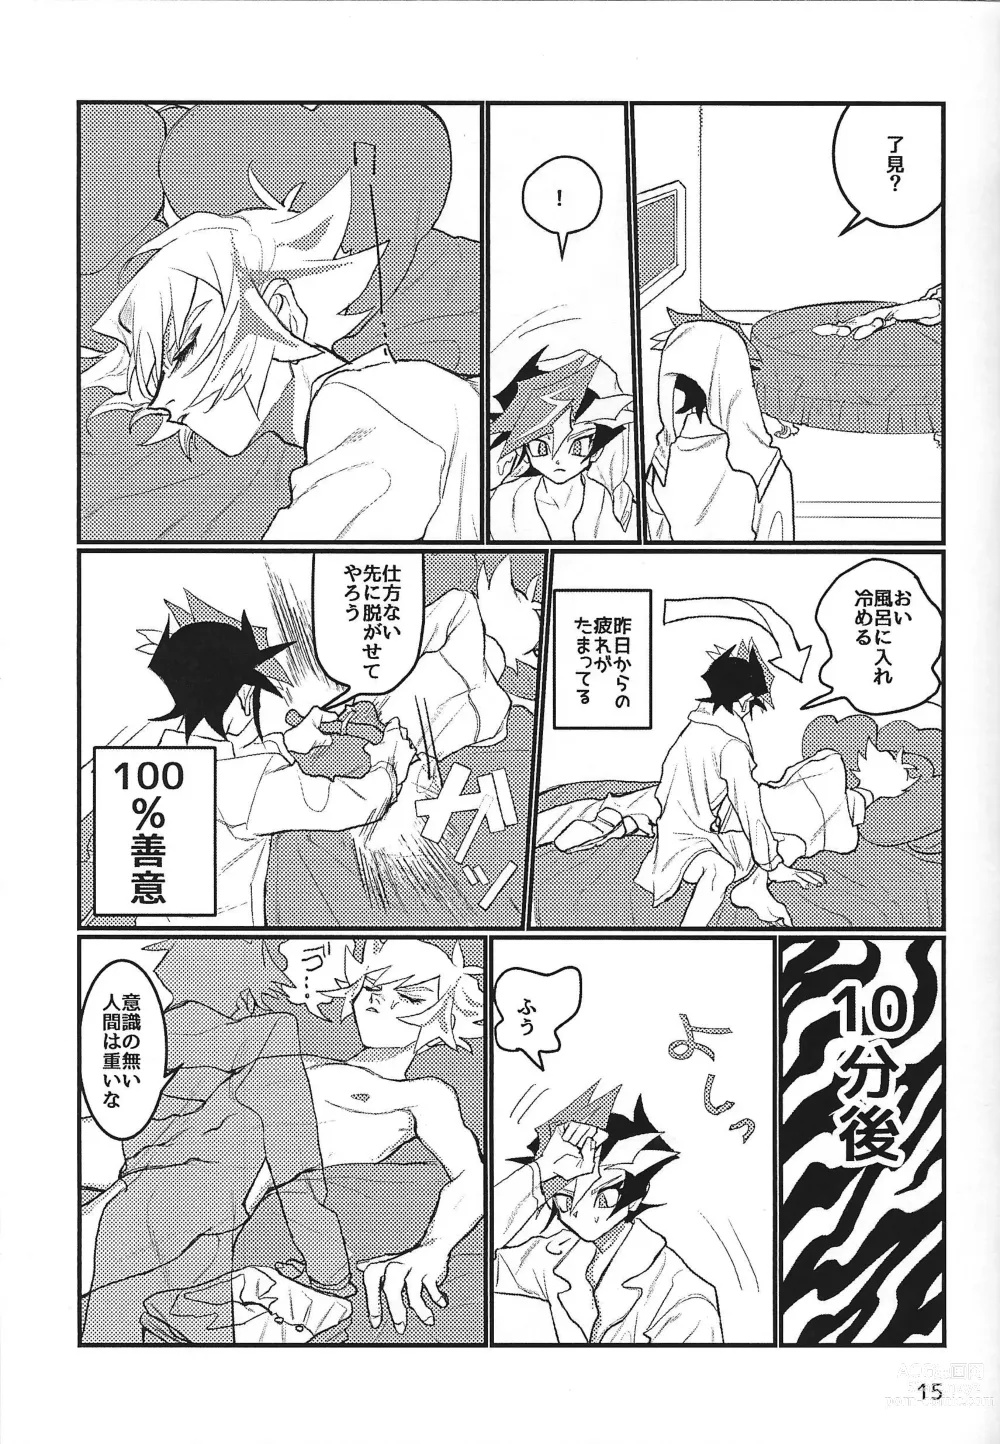 Page 16 of doujinshi LOTUS